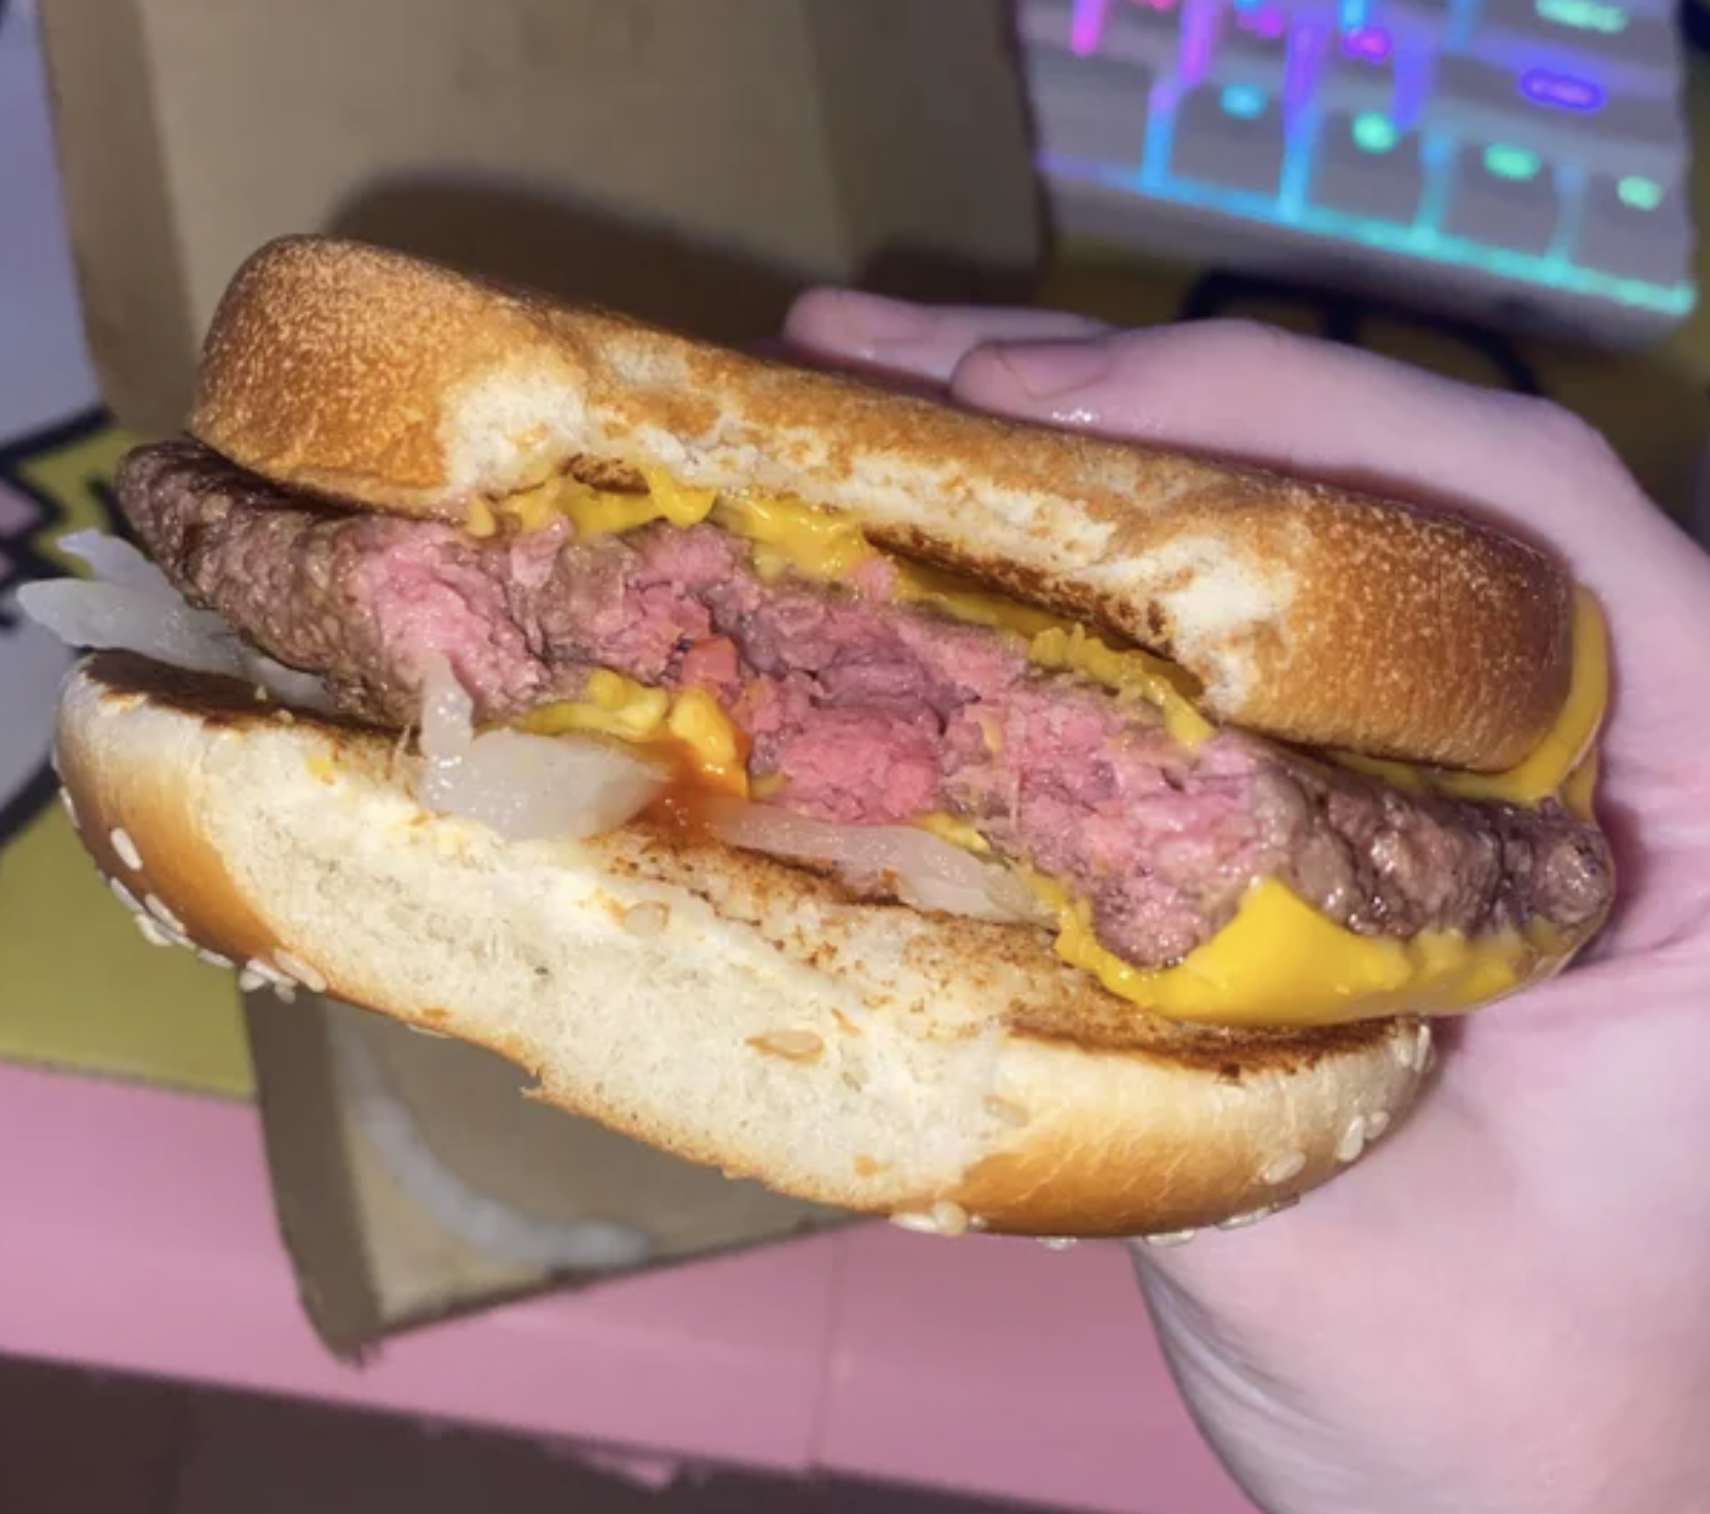 Undercooked McDonald's burger